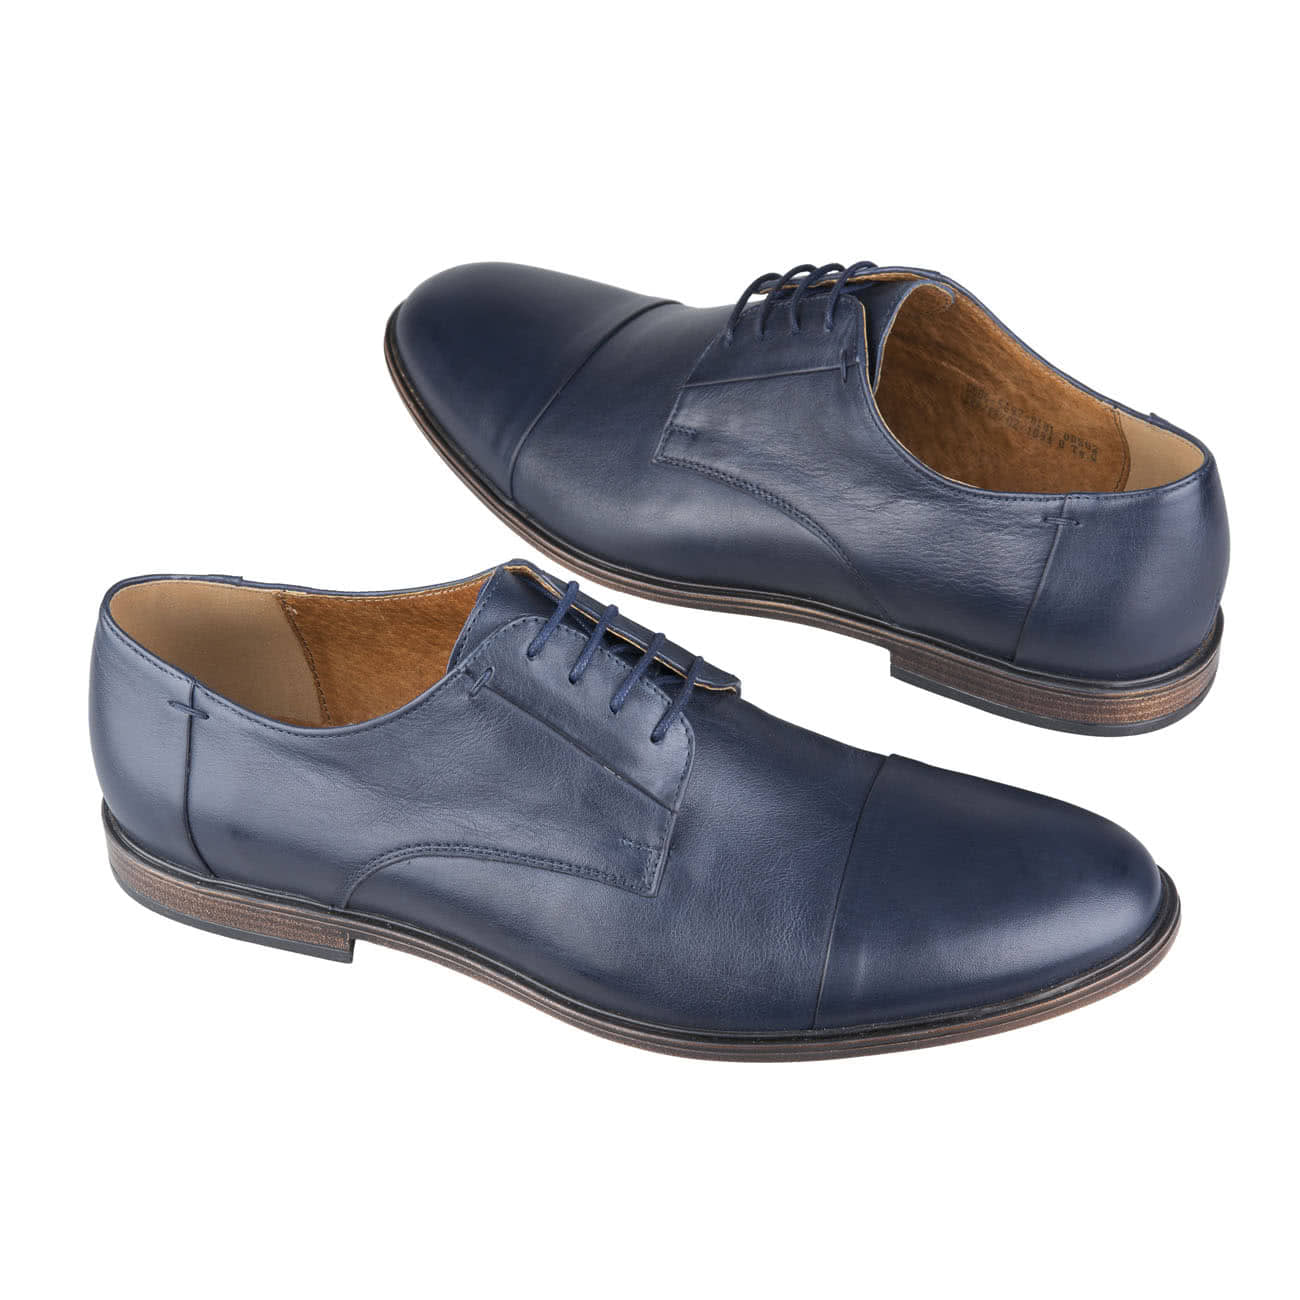 Классические синие мужские туфли из натуральной кожи на шнурках купить в  интернет магазине Kwinto - товара нет в наличии